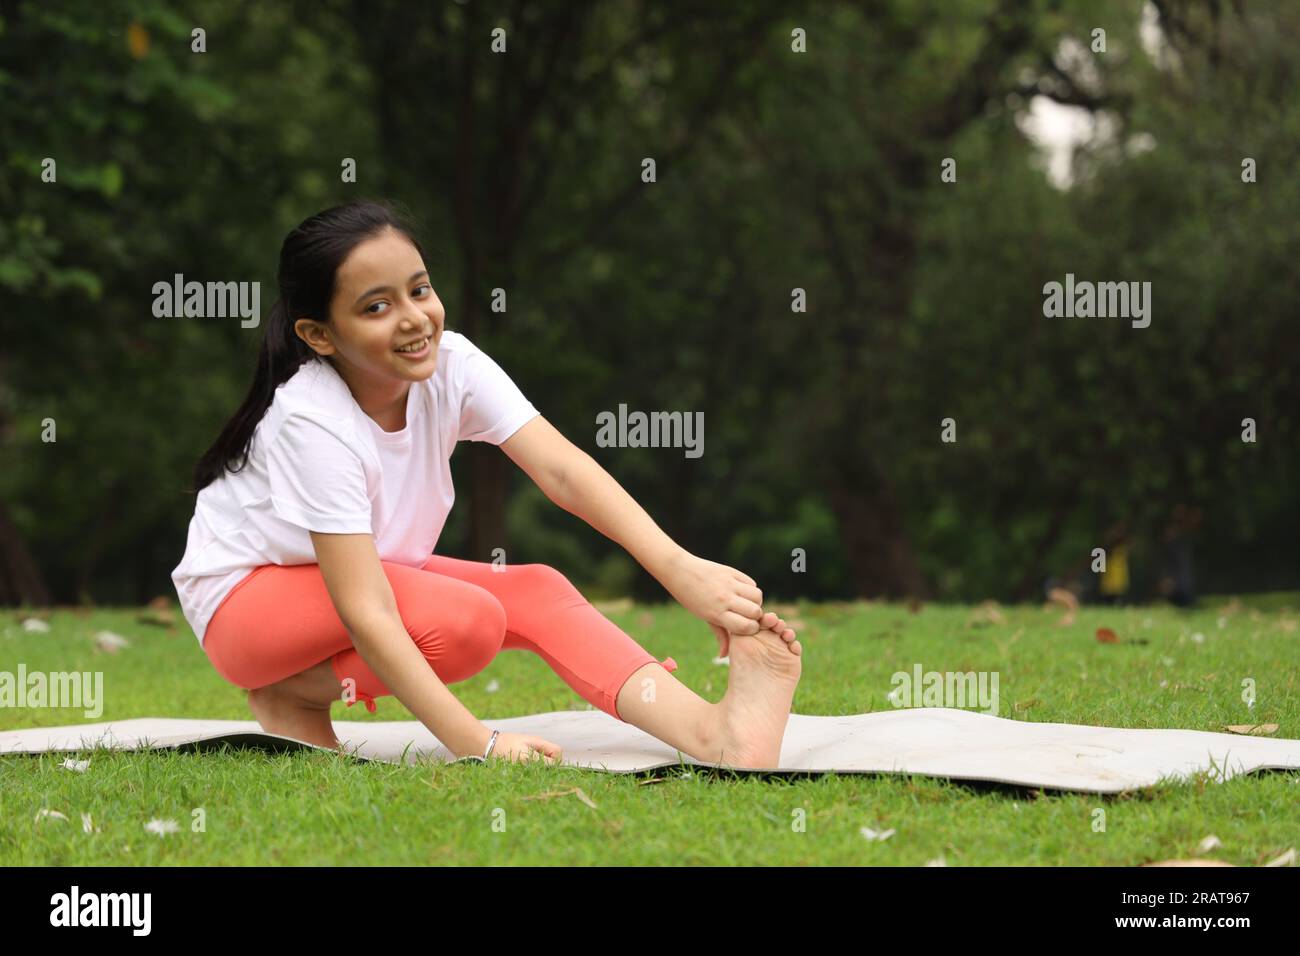 Un bambino che fa esercizi di yoga la mattina presto in un parco pubblico verde. Possiamo vedere le anatre in giro. Il bambino è consapevole della salute. Felice ragazza yoga. Foto Stock